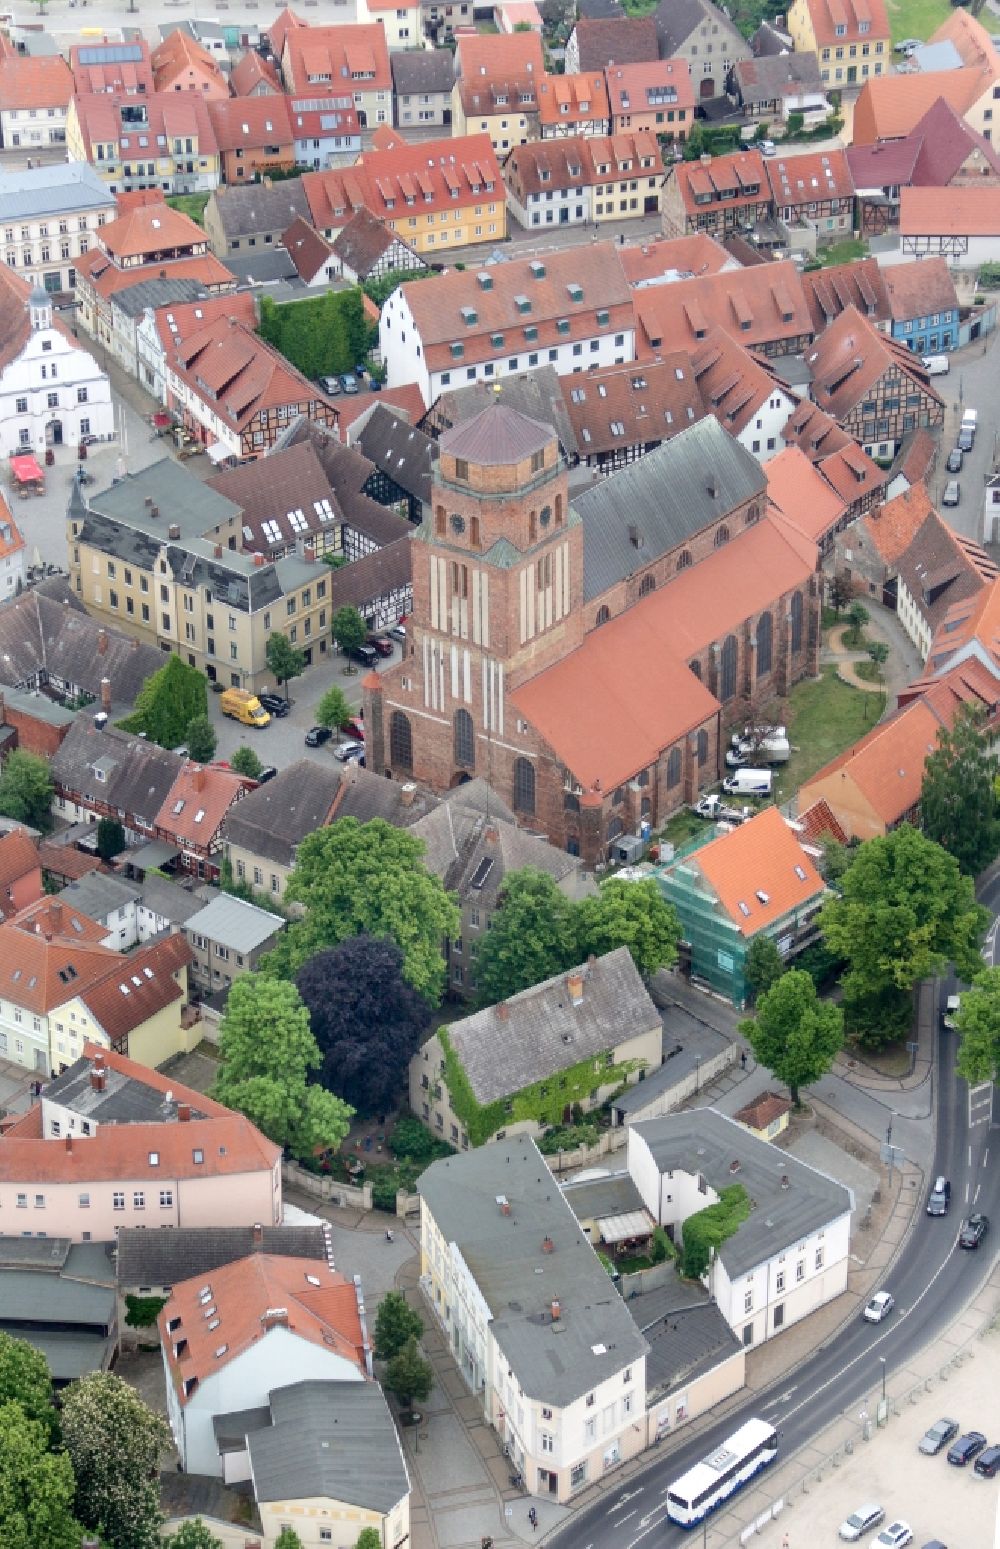 Luftbild Wolgast - Kirchengebäude der St. Petri Kirche in Wolgast im Bundesland Mecklenburg-Vorpommern, Deutschland